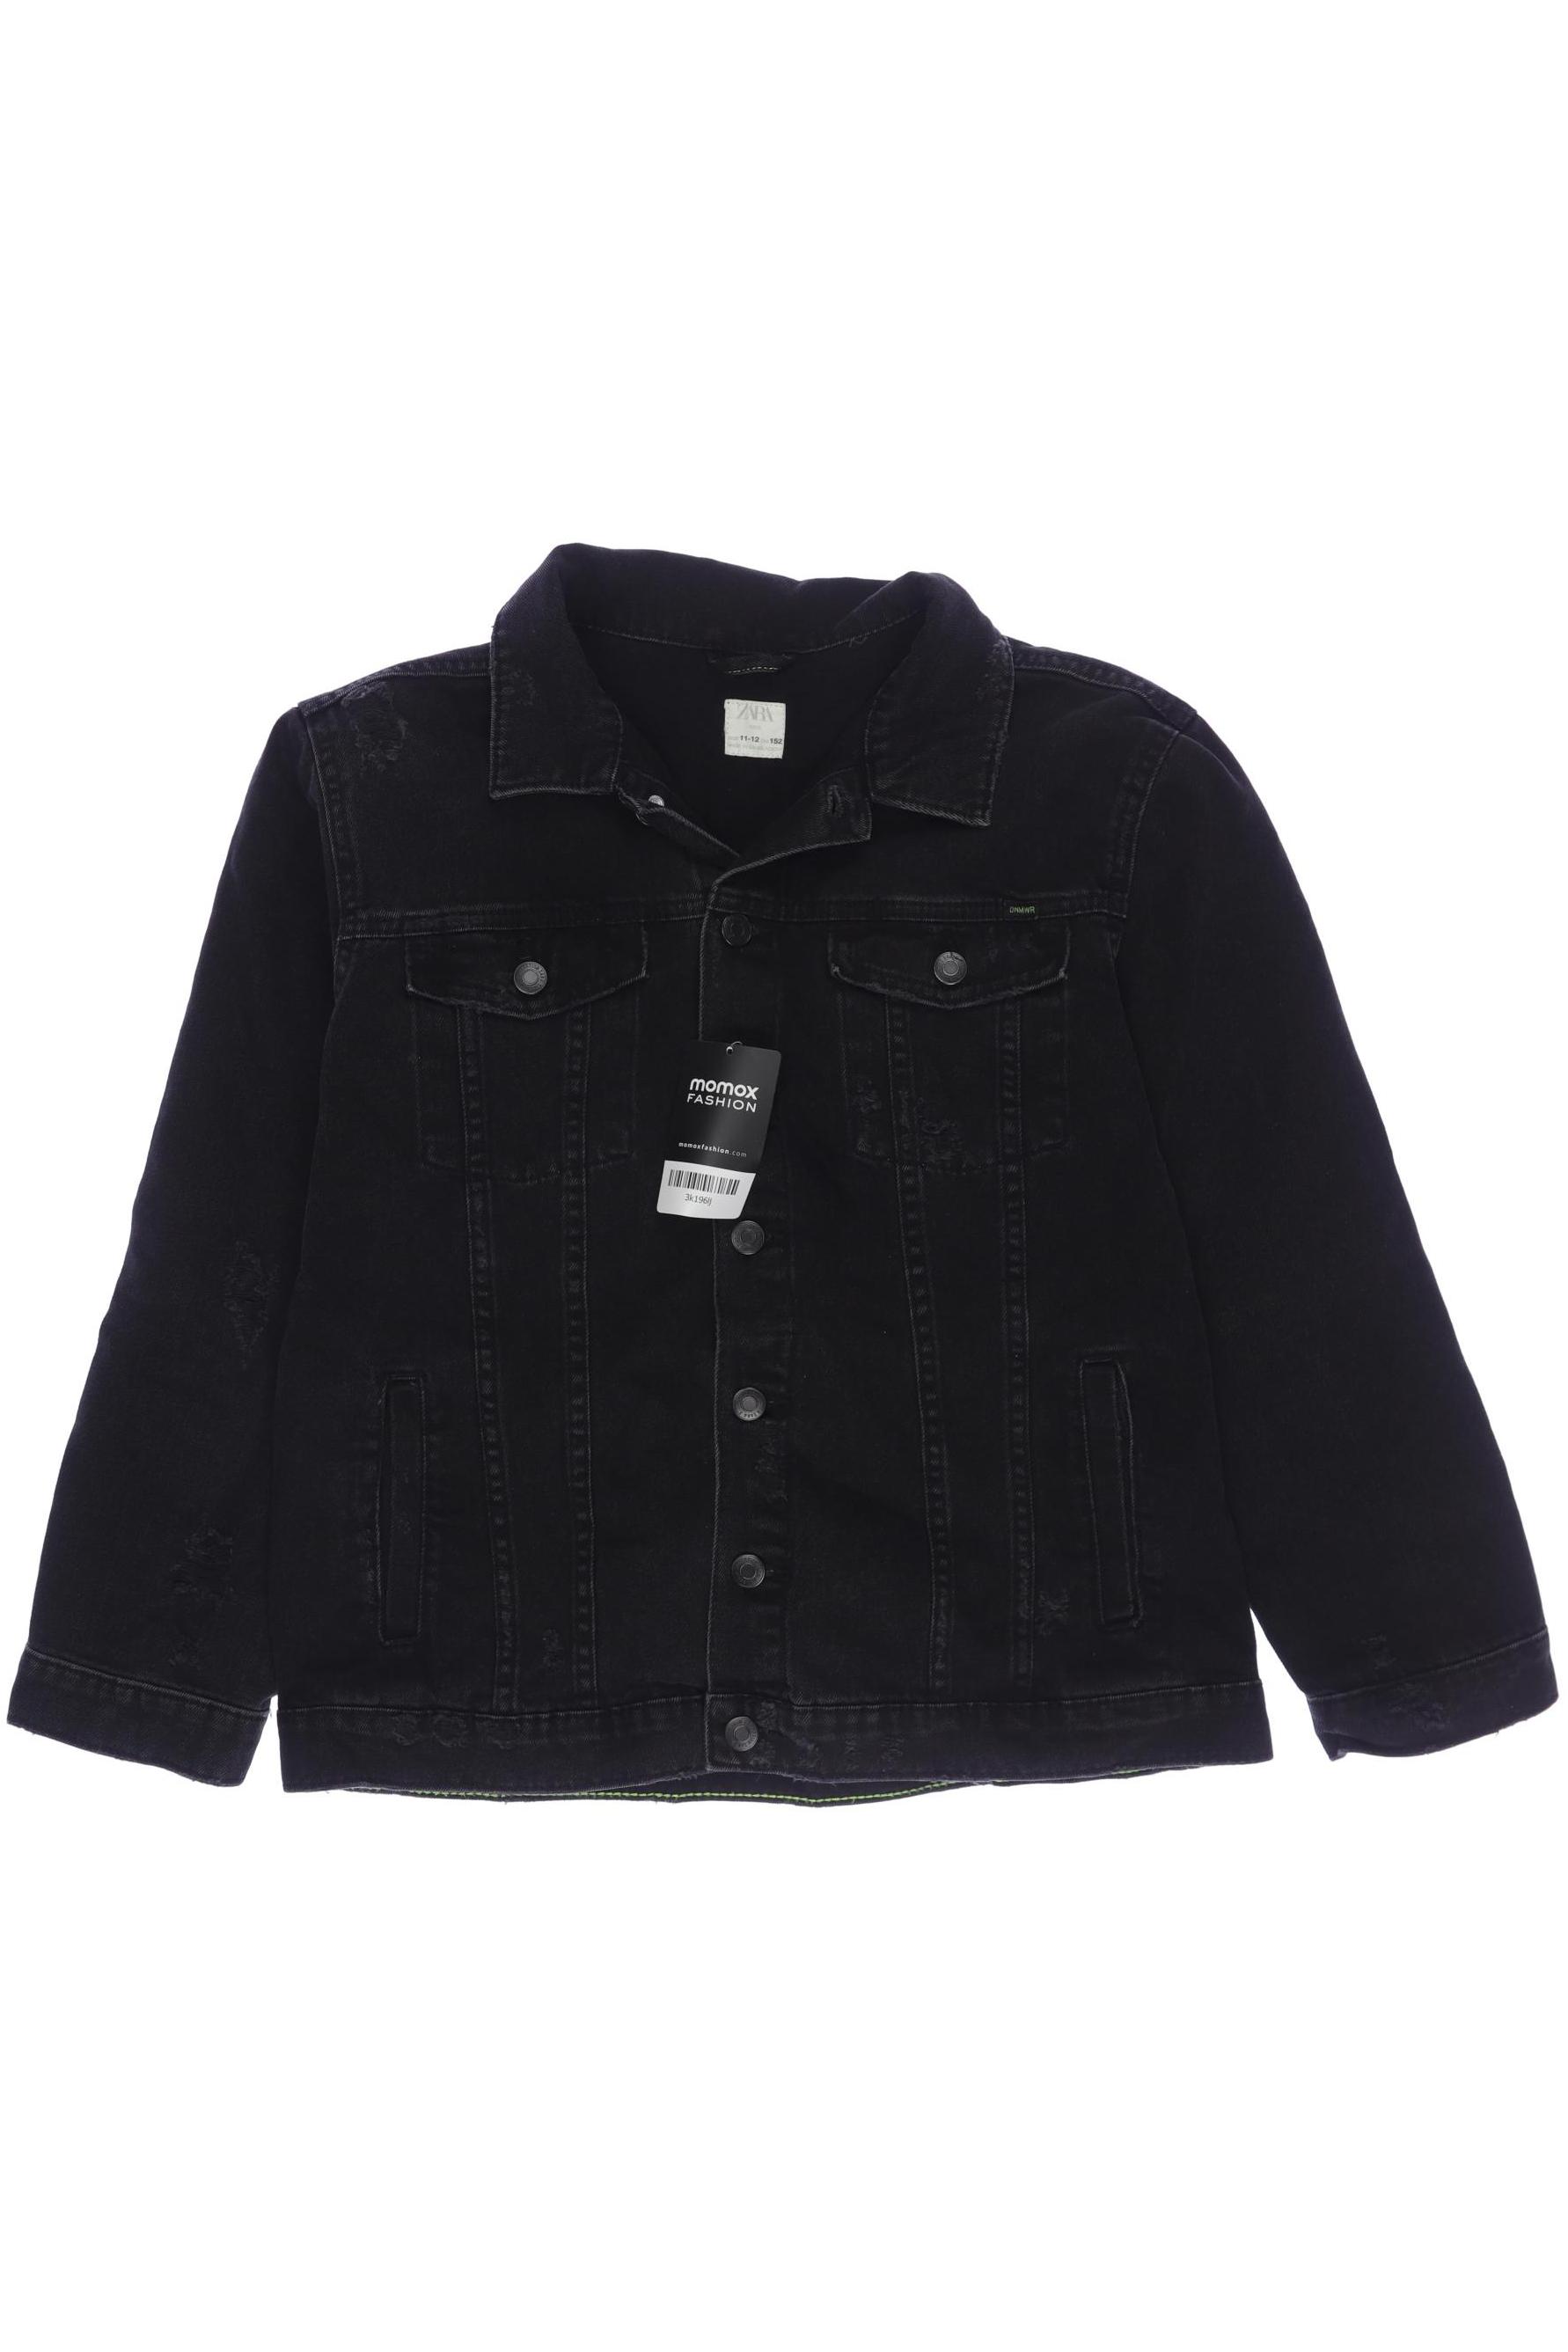 Zara Damen Jacke, schwarz, Gr. 152 von ZARA